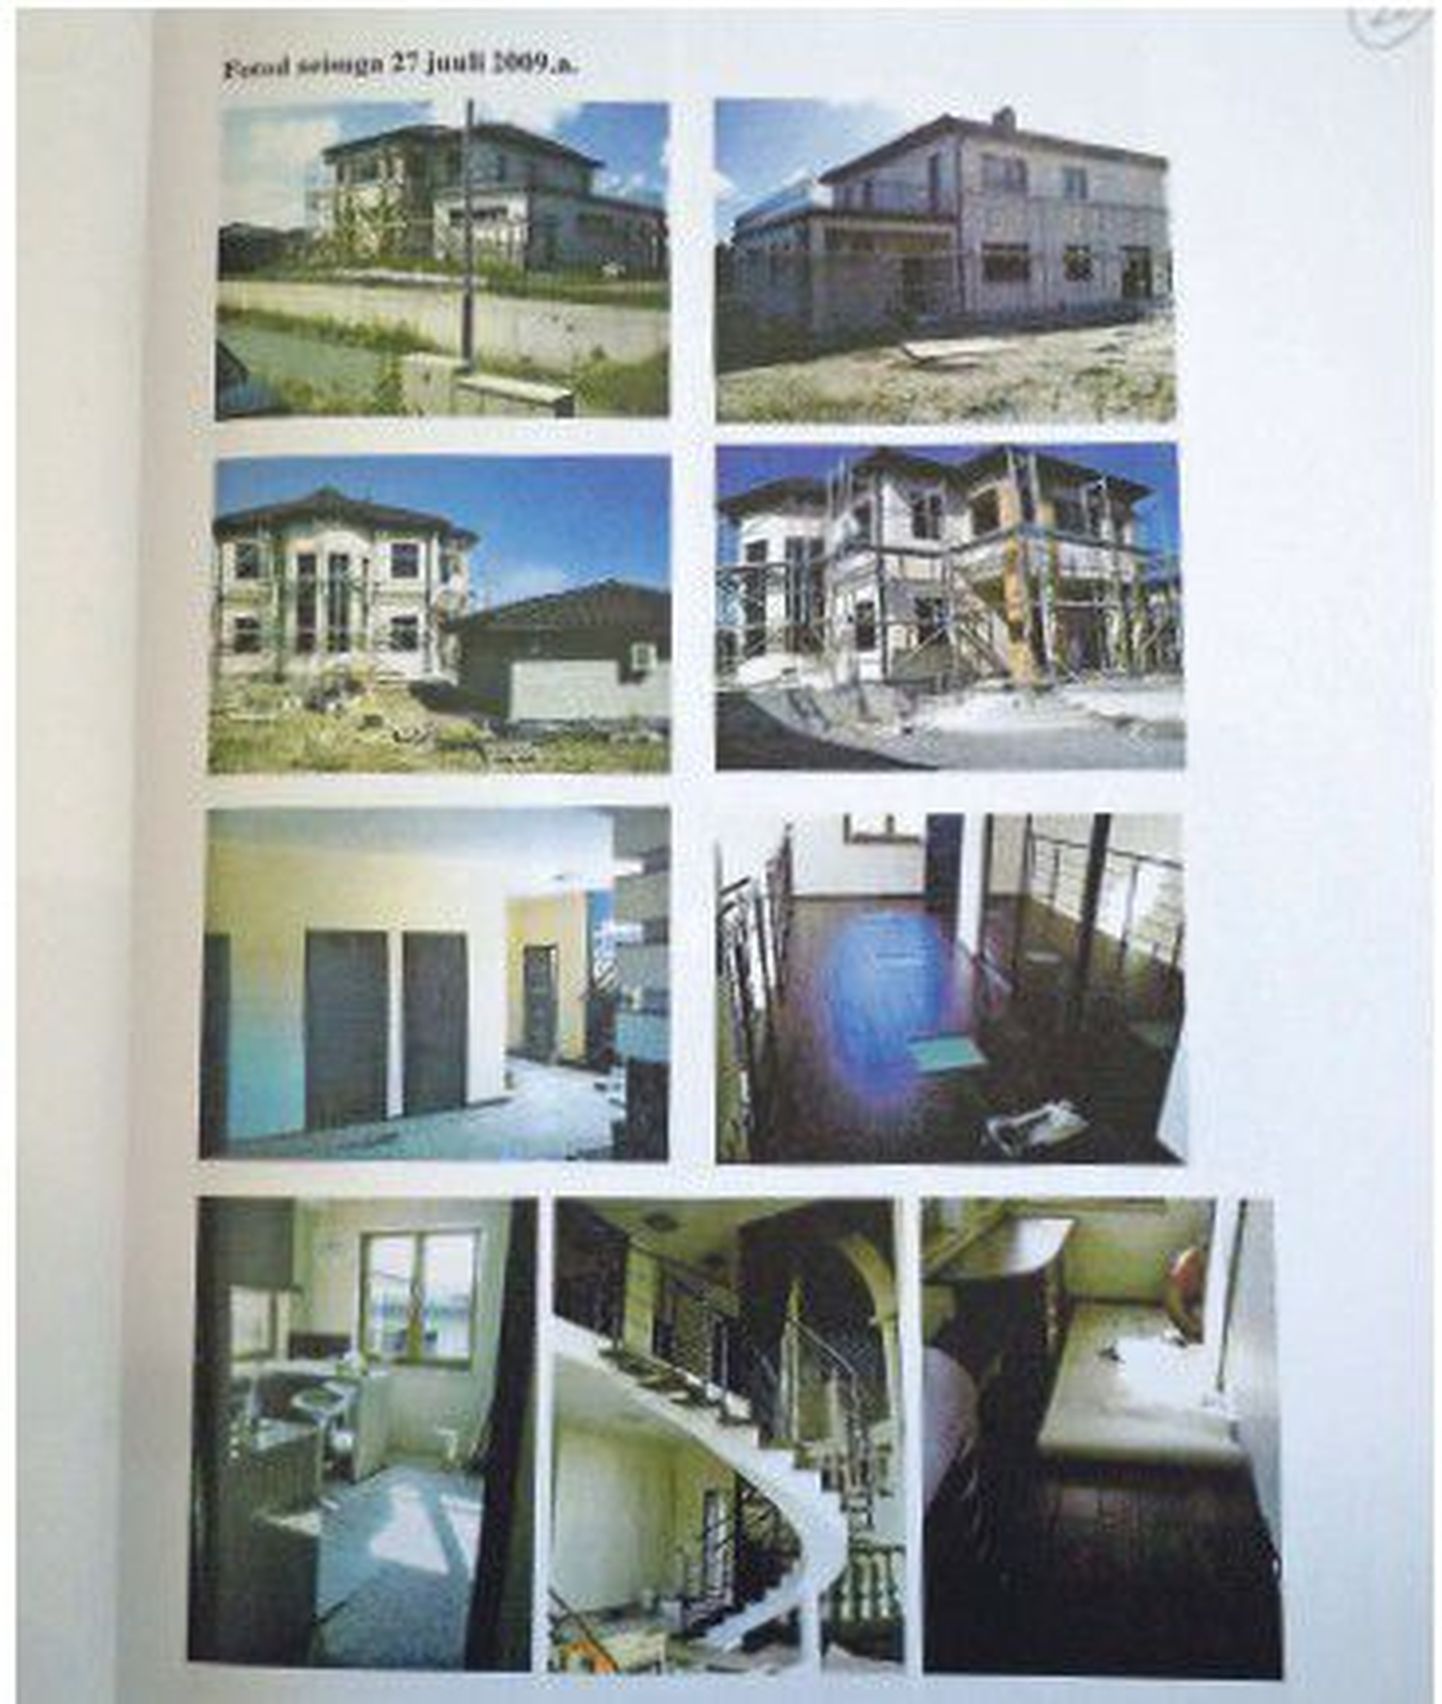 На основании этих фотографий чужого дома была произведена оценка недвижимости, под которую Микк взял кредит в банке.